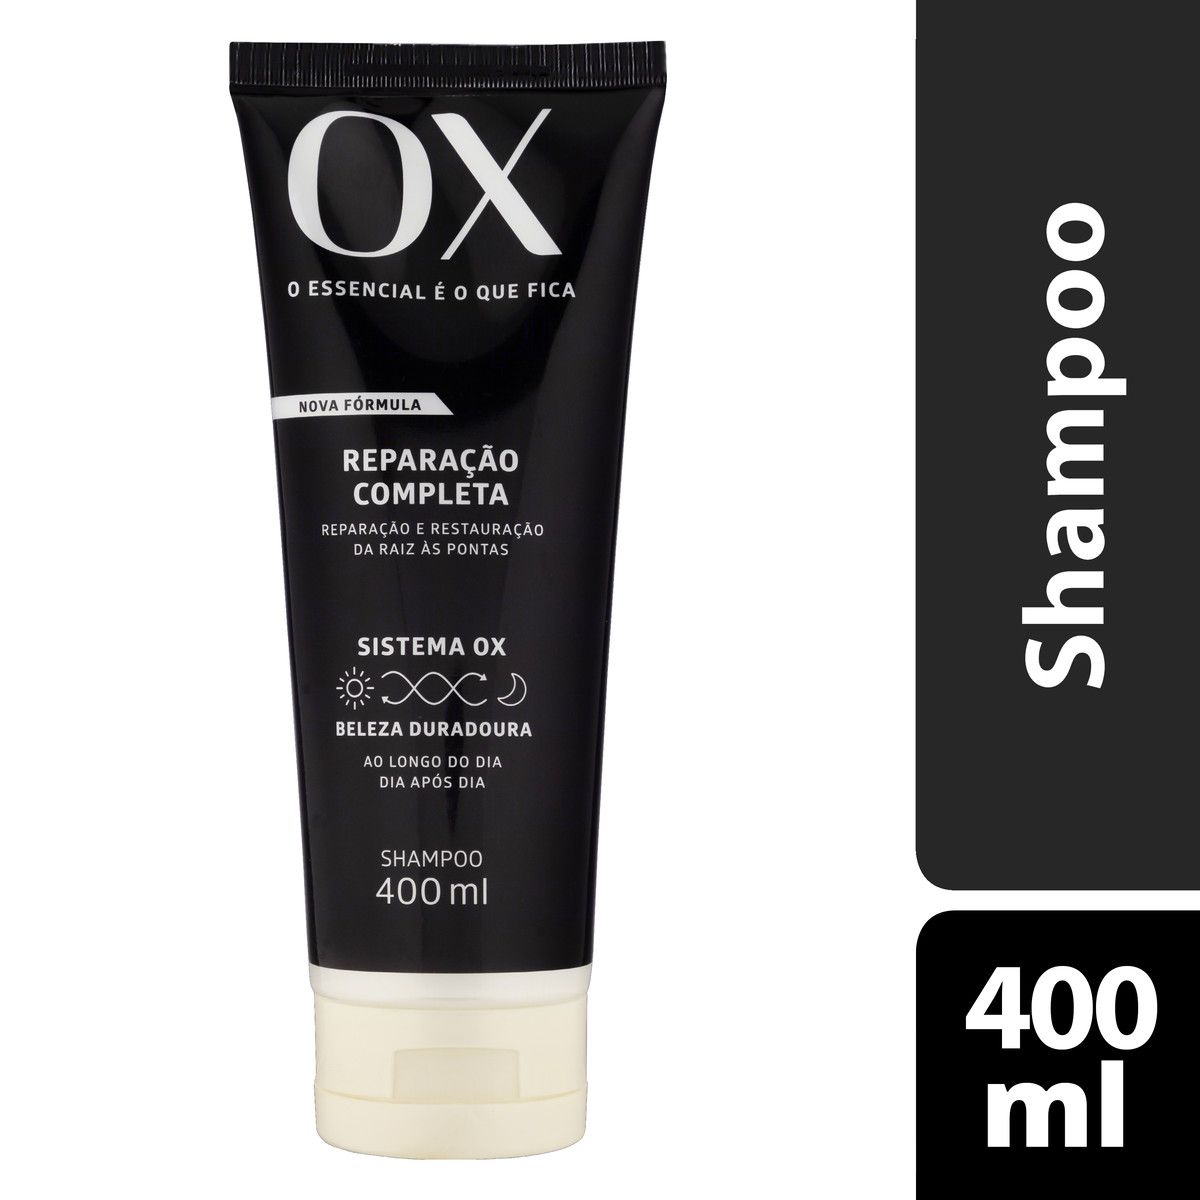 O Melhor Preço De Shampoo Ox Cosmeticos Reparação Completa É No